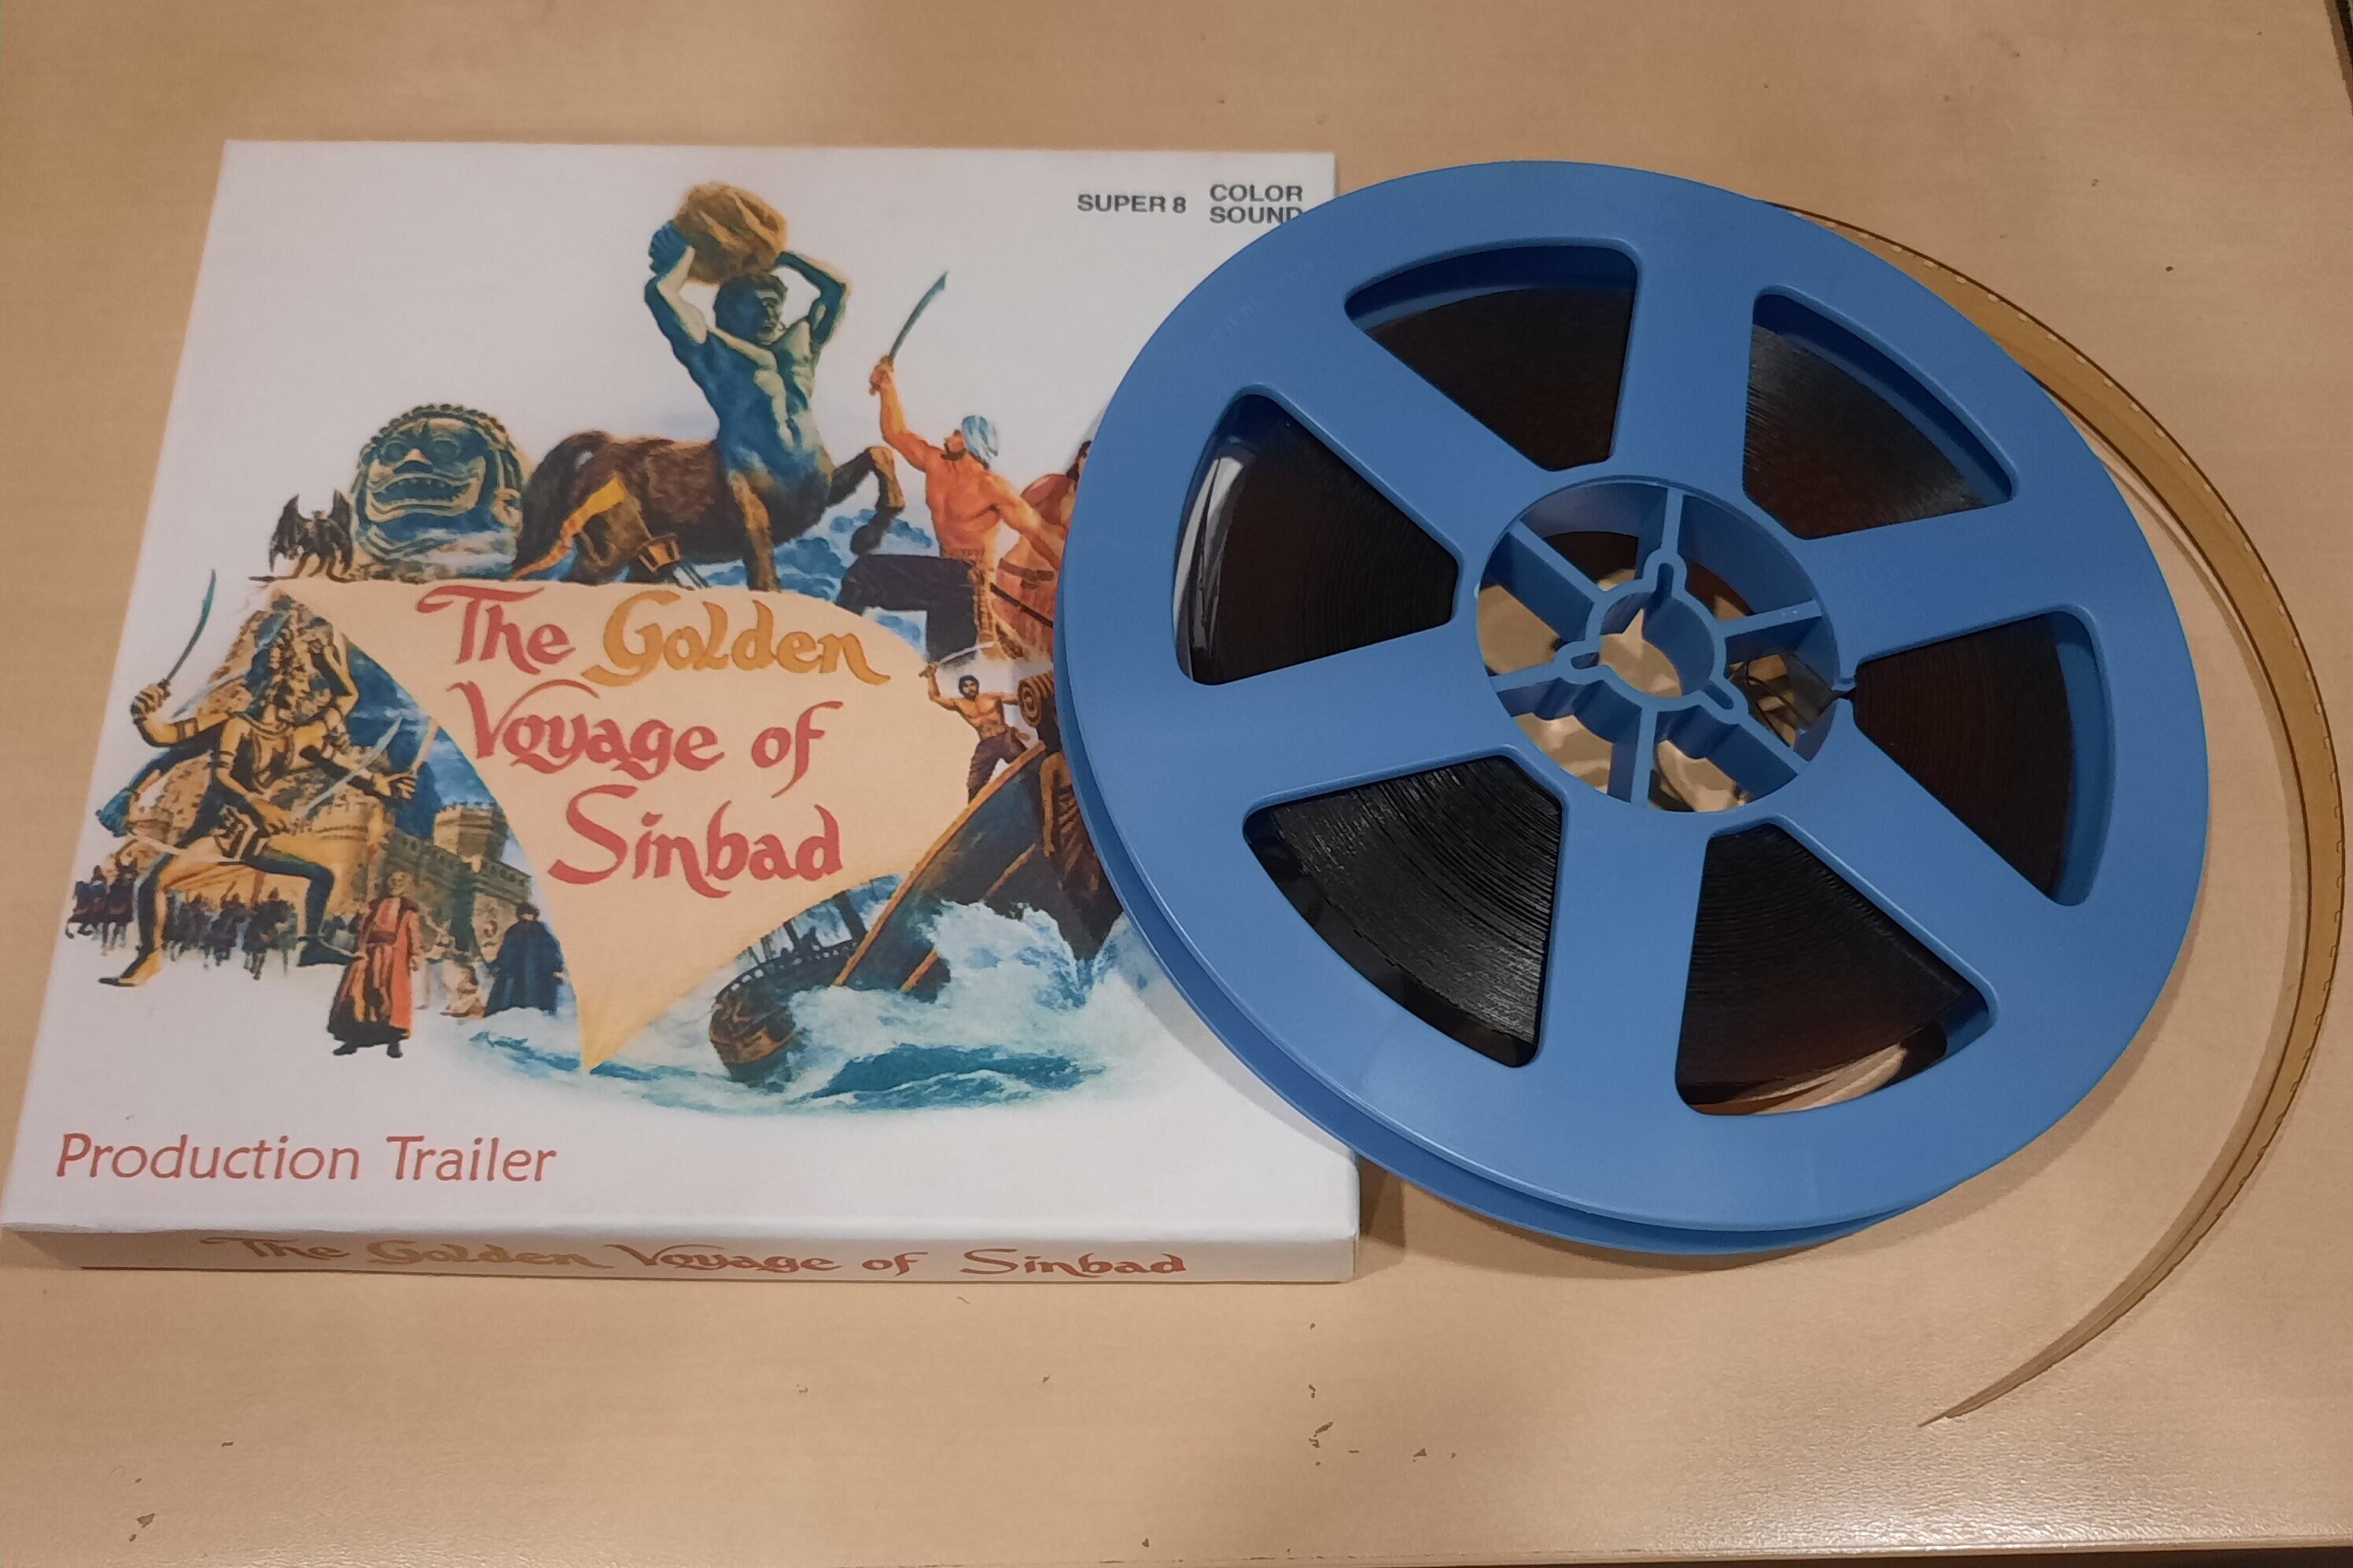 Super 8mm Golden Voyage of Sinbad Production Trailer HARRYHAUSEN 